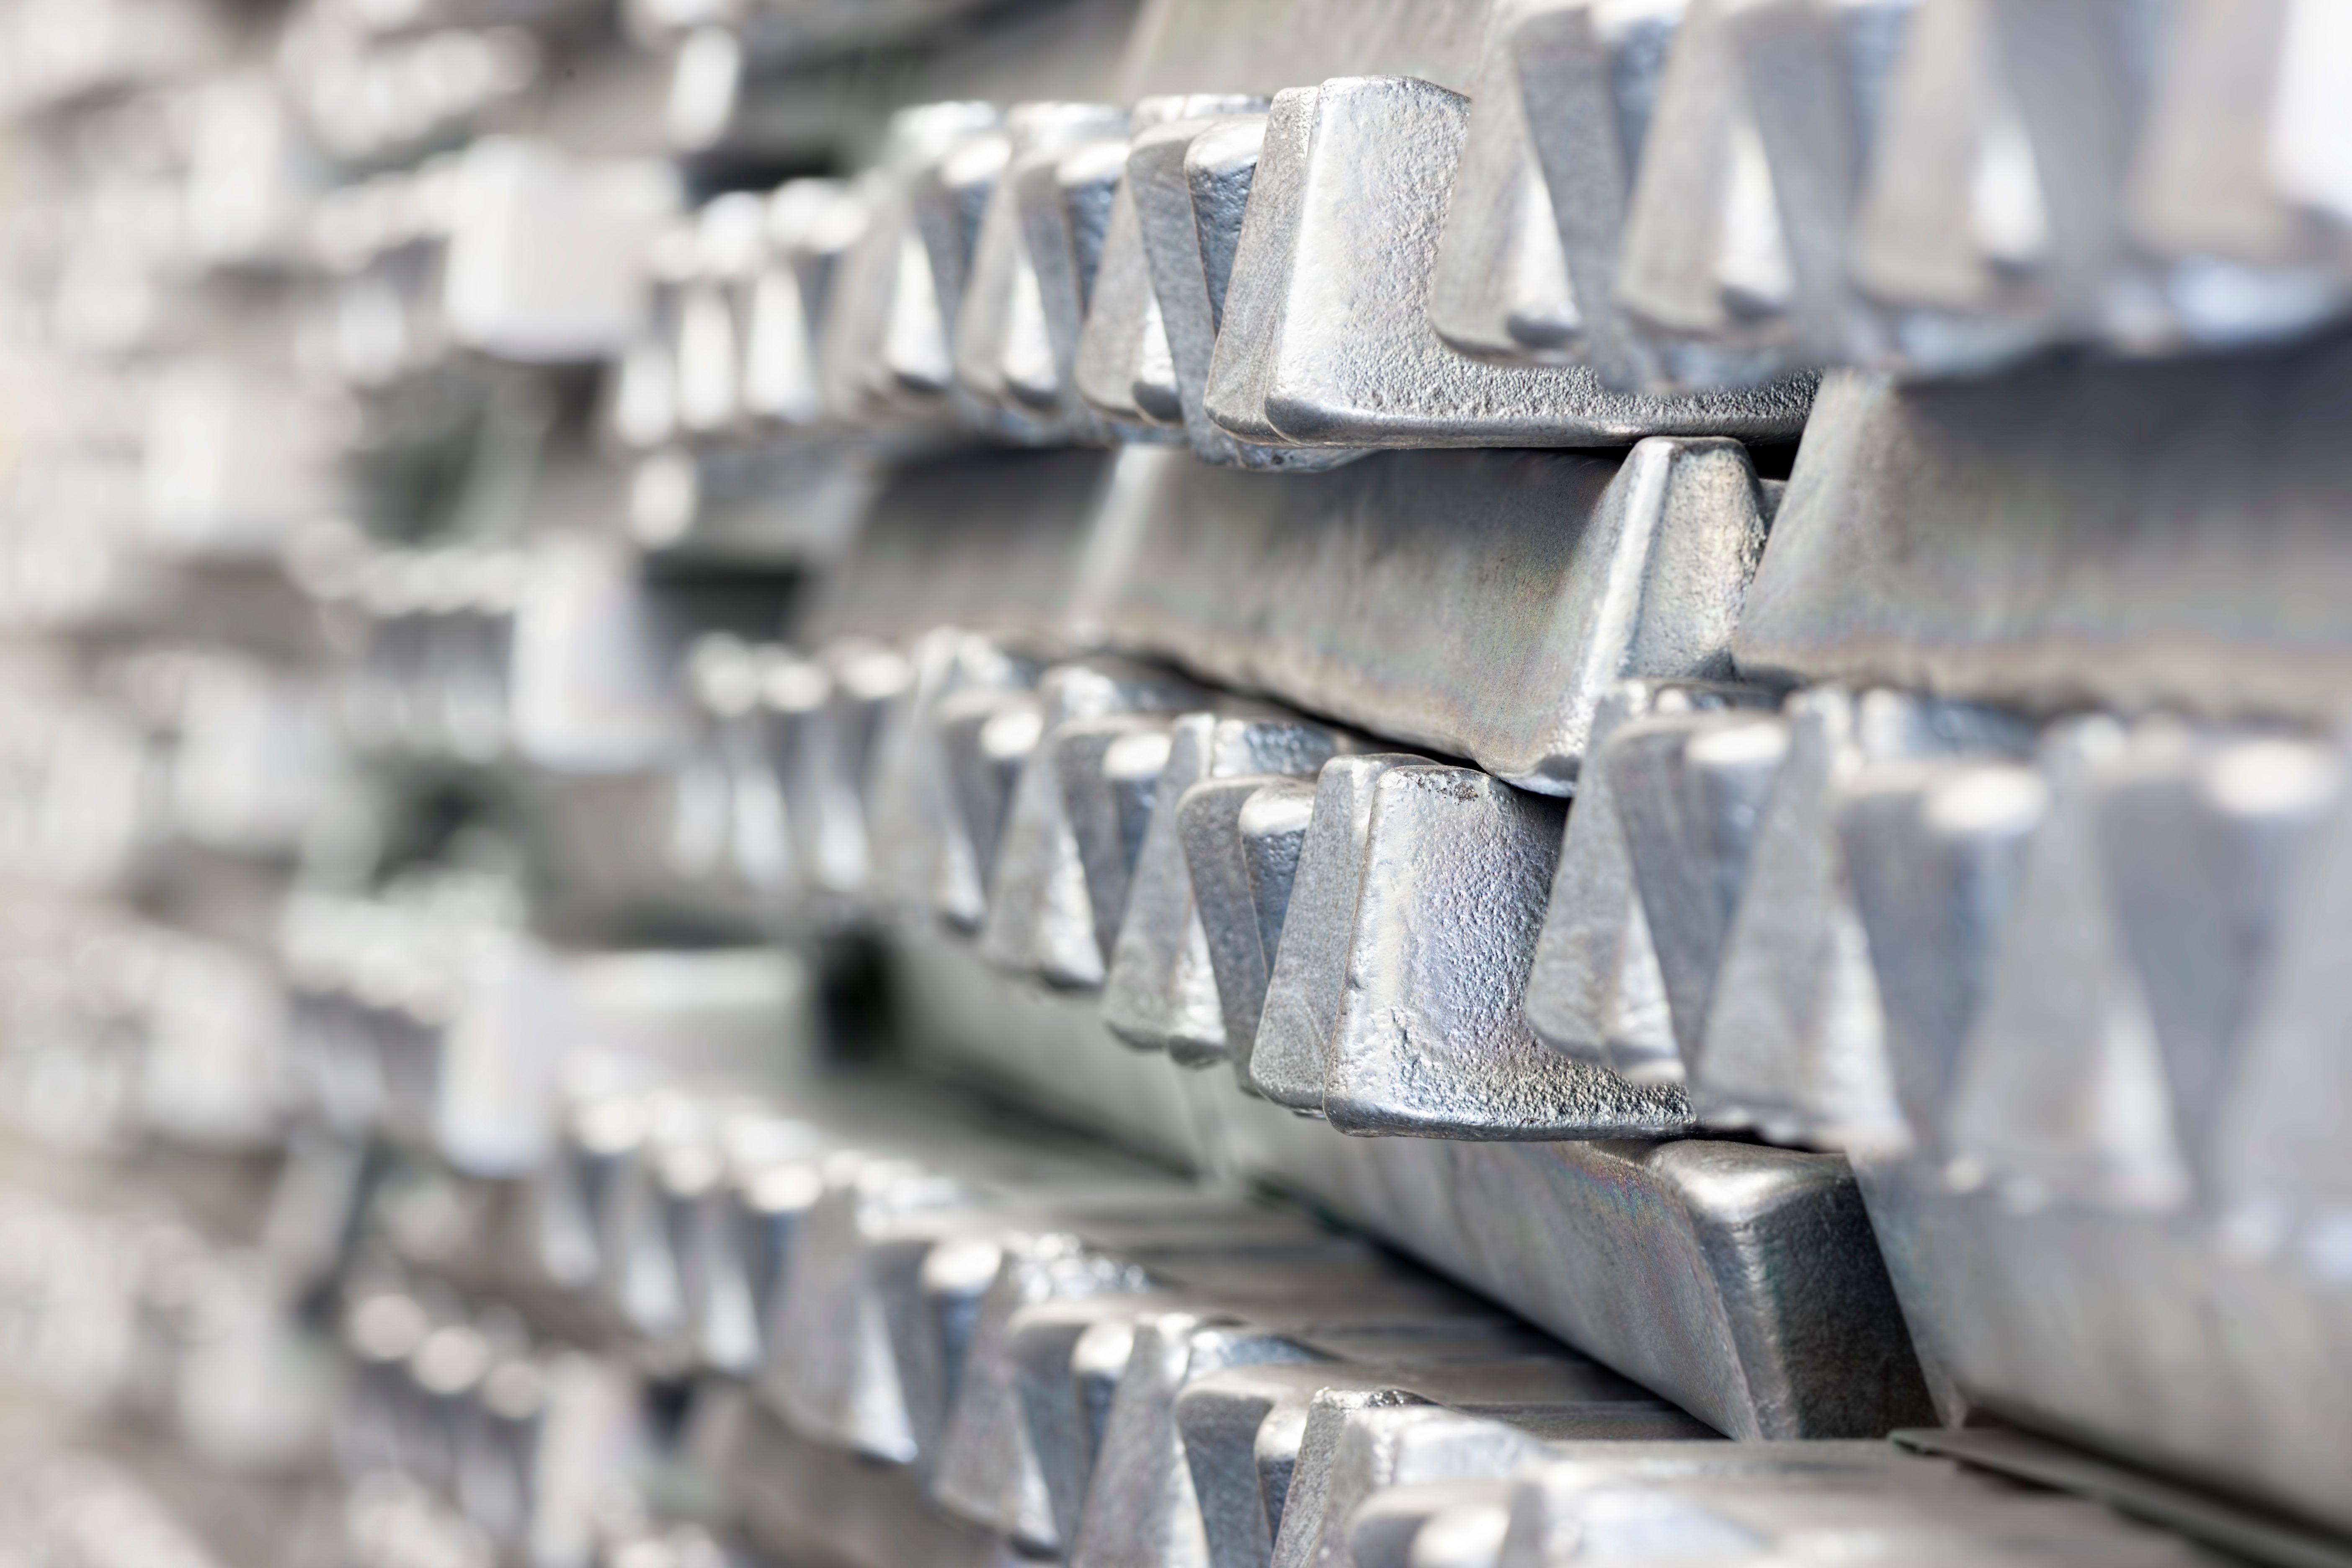 Aluminium Price Forecast  Is Aluminium a good investment?